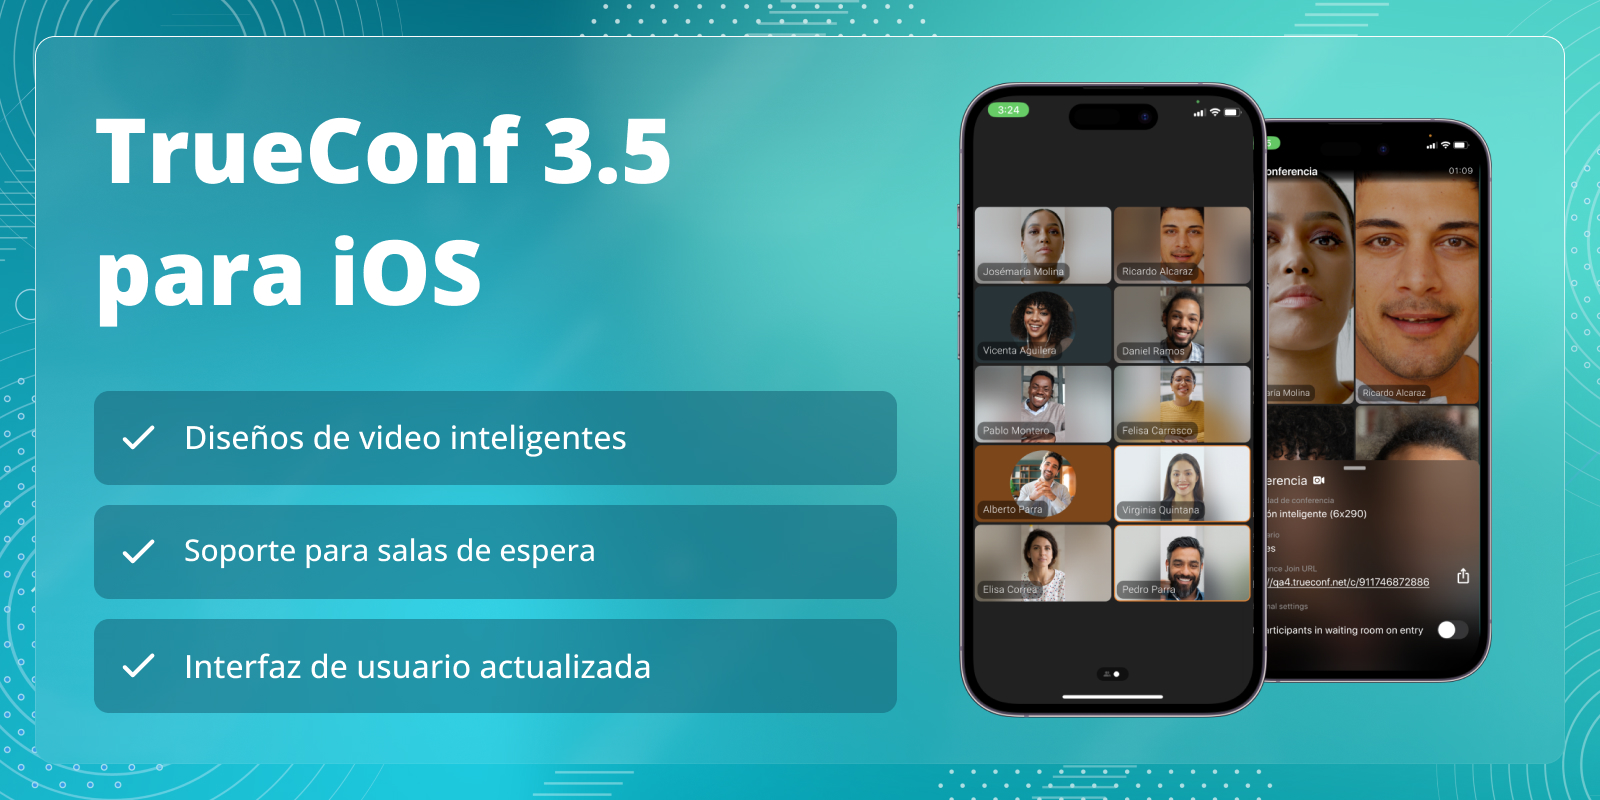 TrueConf 3.5 para iOS: Diseños inteligentes y soporte para salas de espera 1